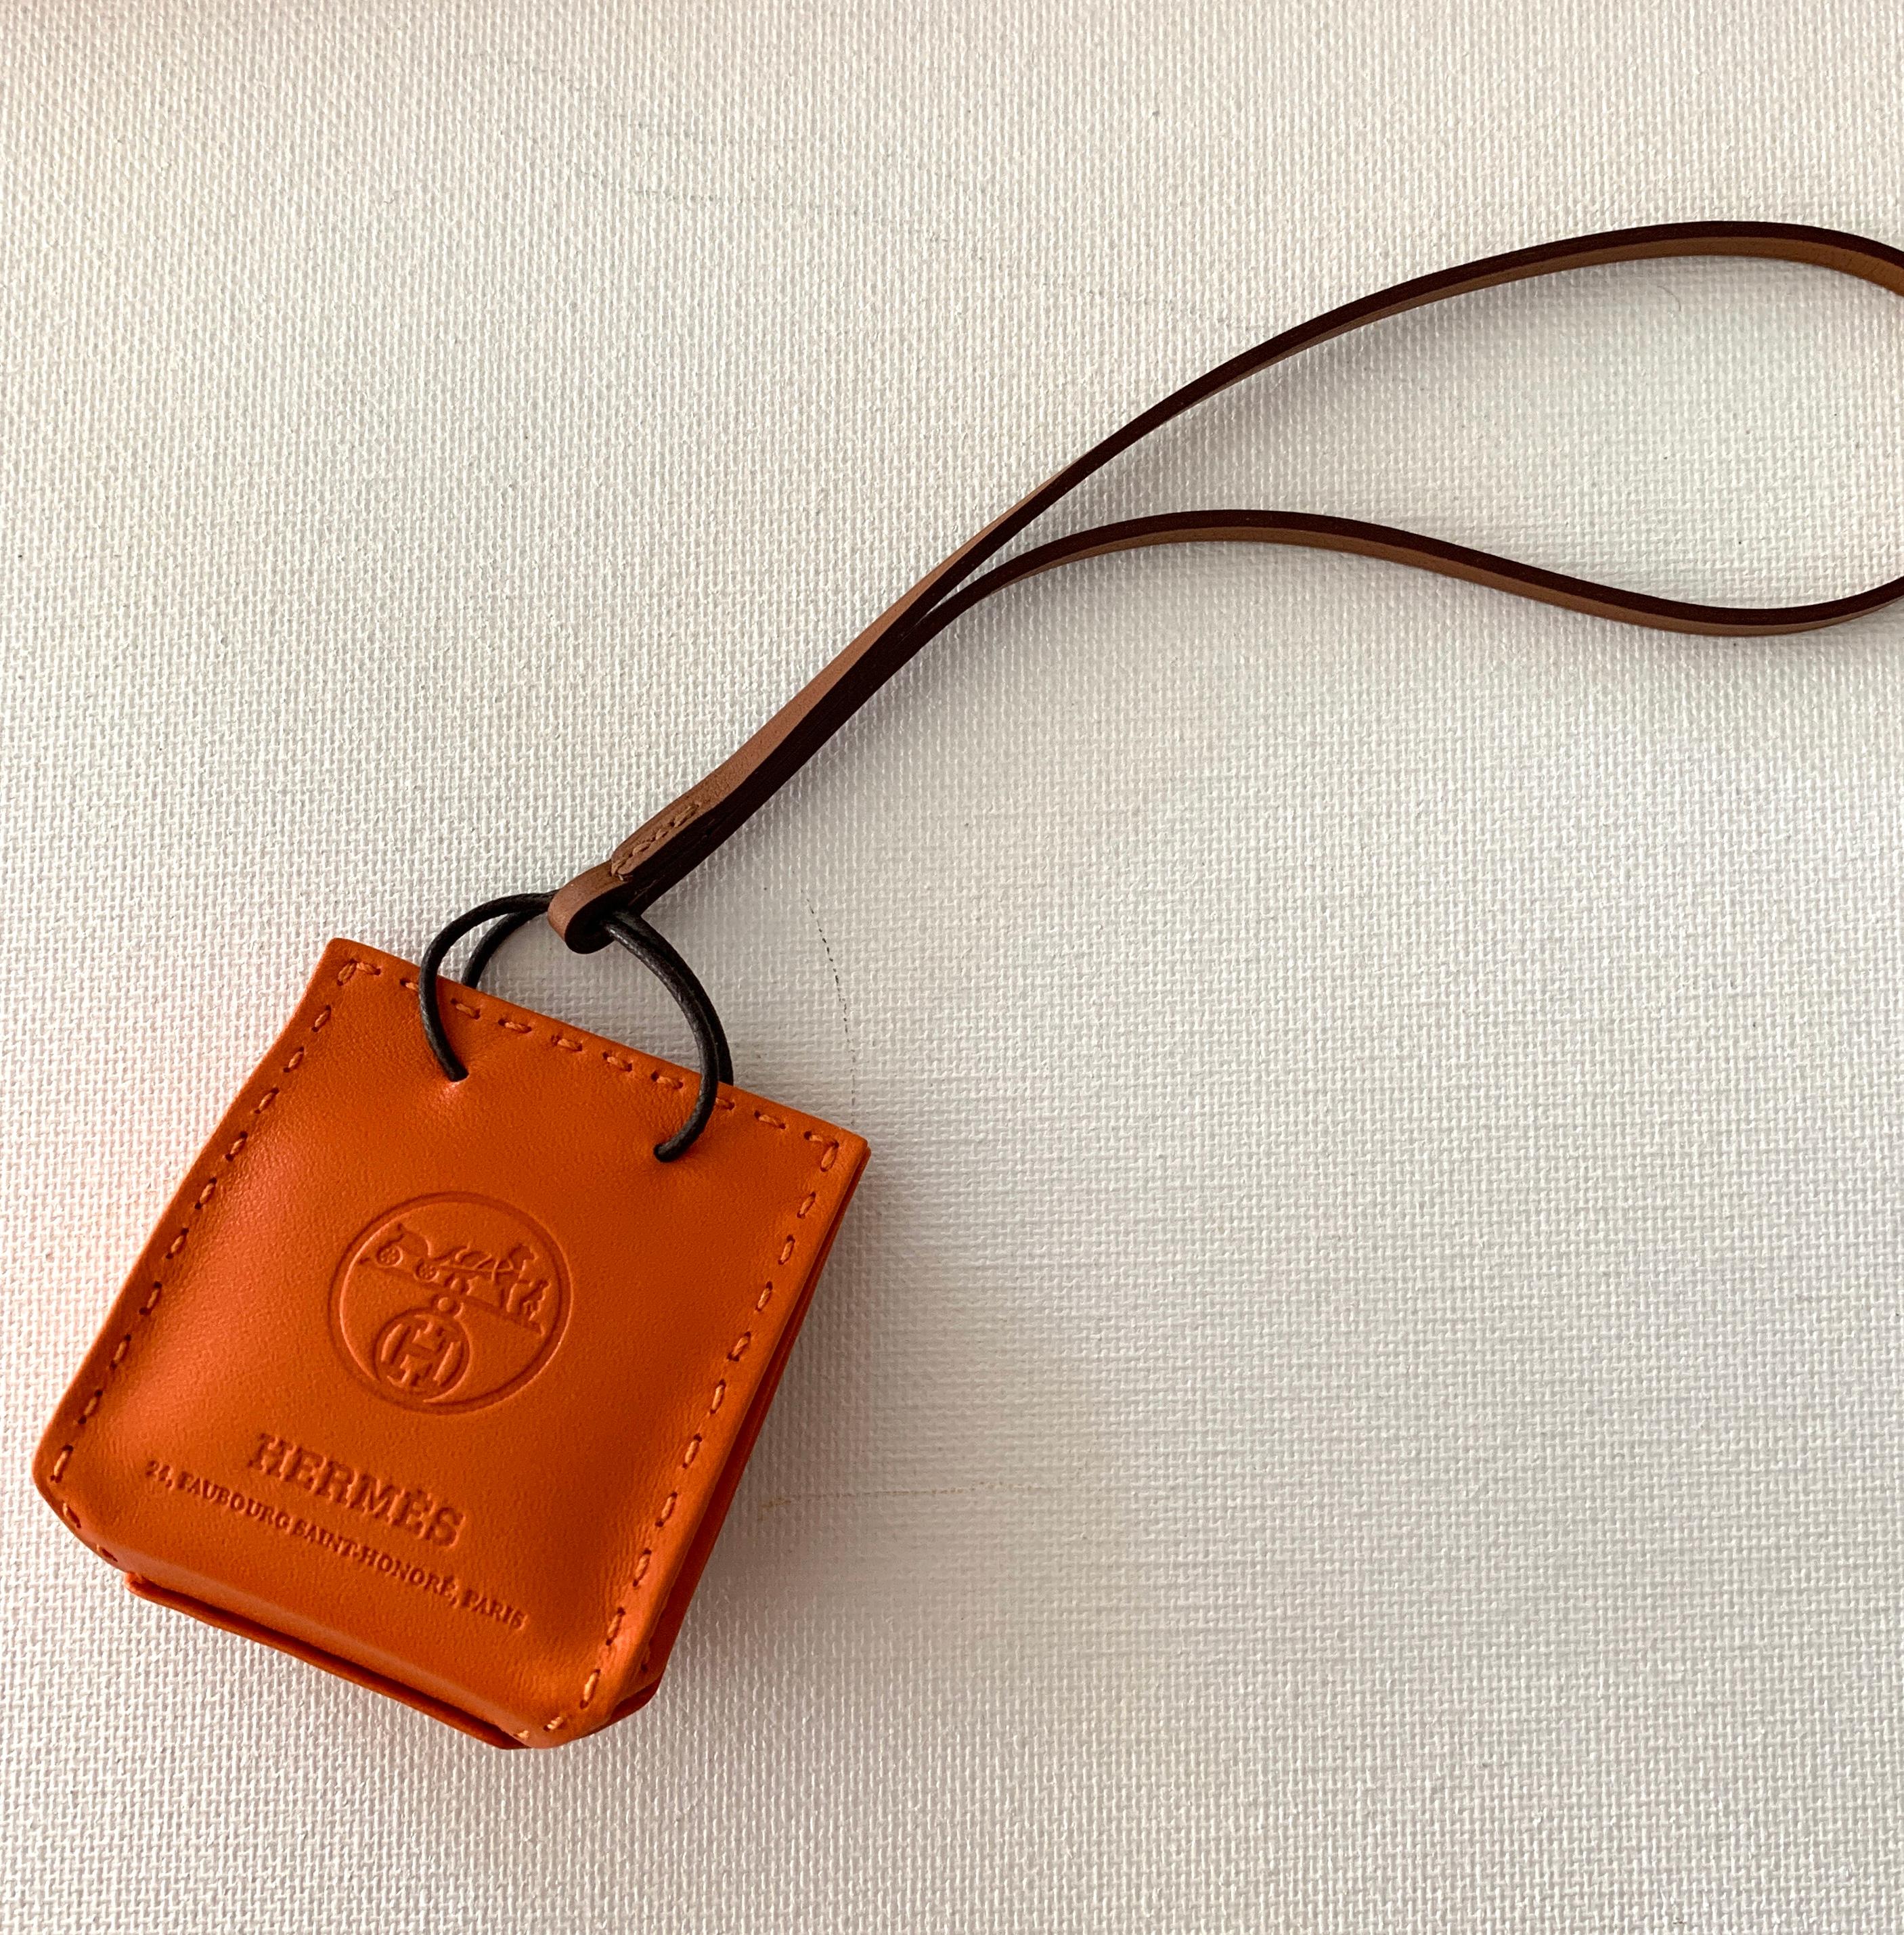 Neue Veröffentlichung
Hermes Orange Leder Einkaufstasche Charme
Zustand ist Neu nie getragen
Maßnahmen 2,25 